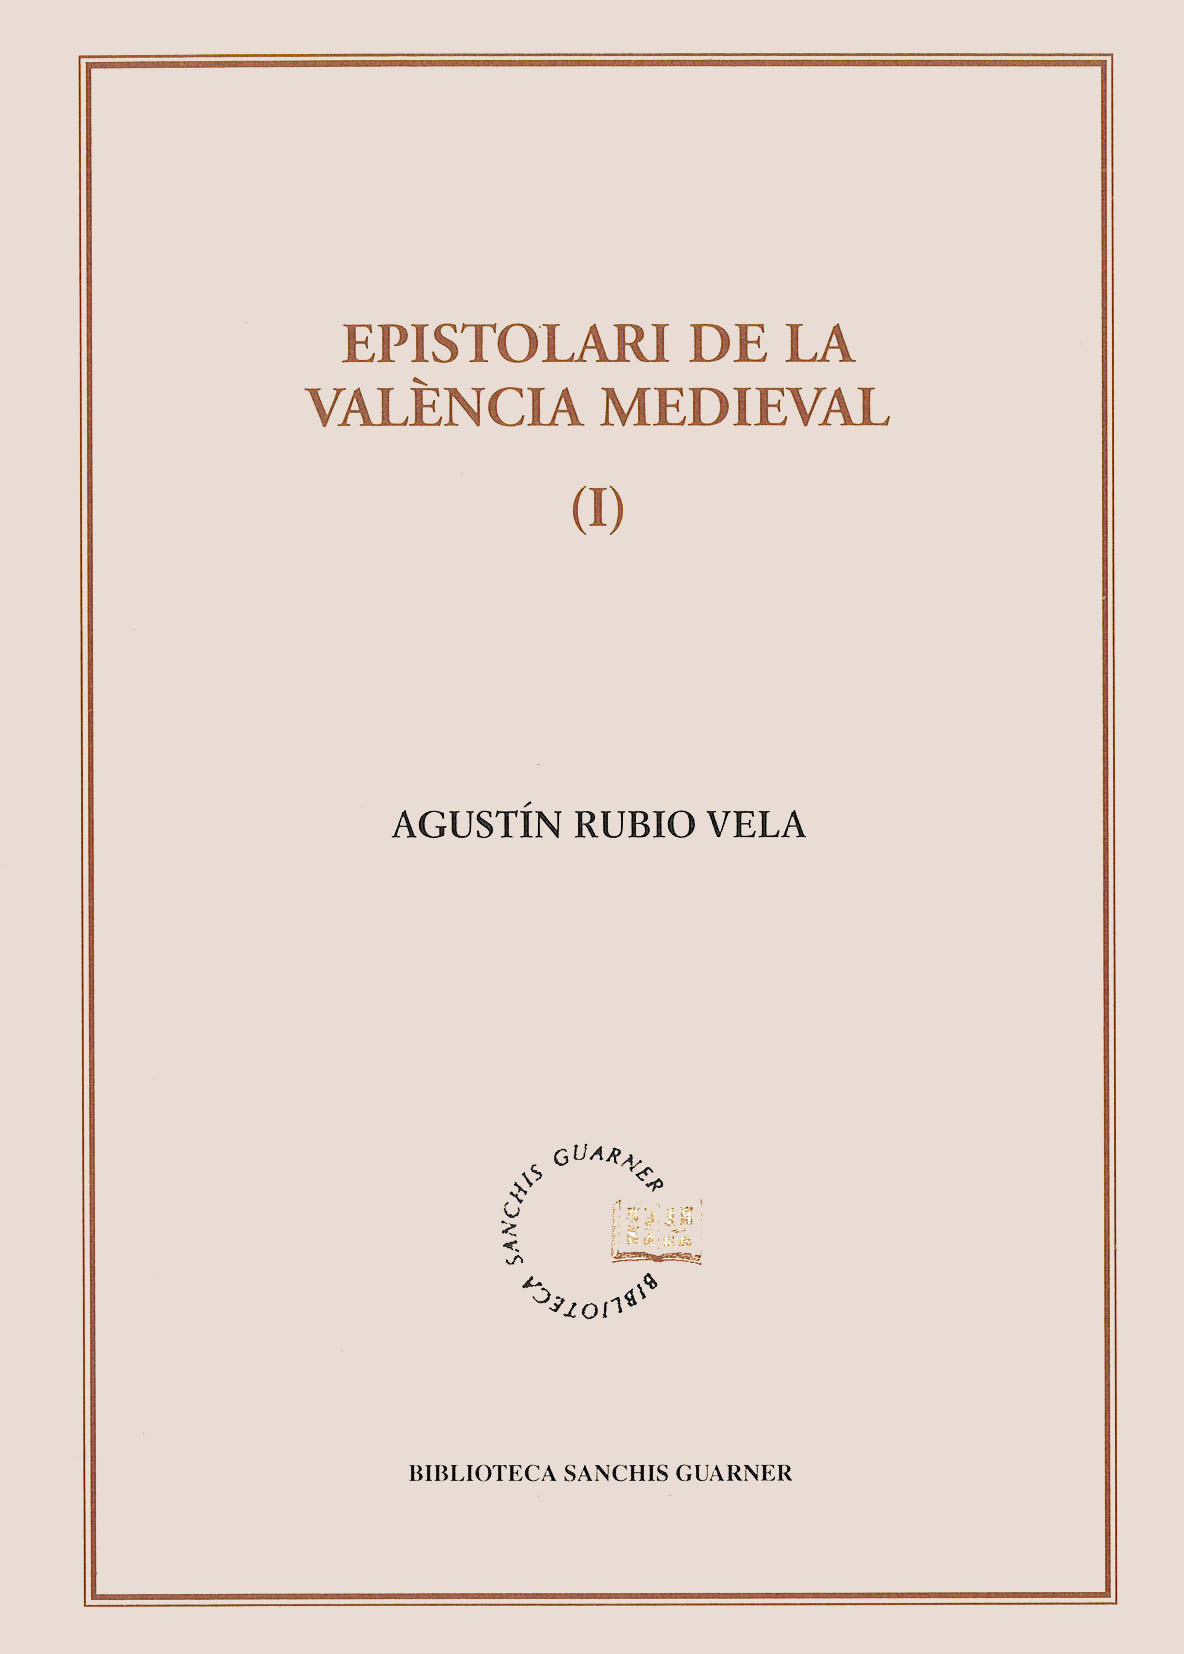 Agustín Rubio Vela